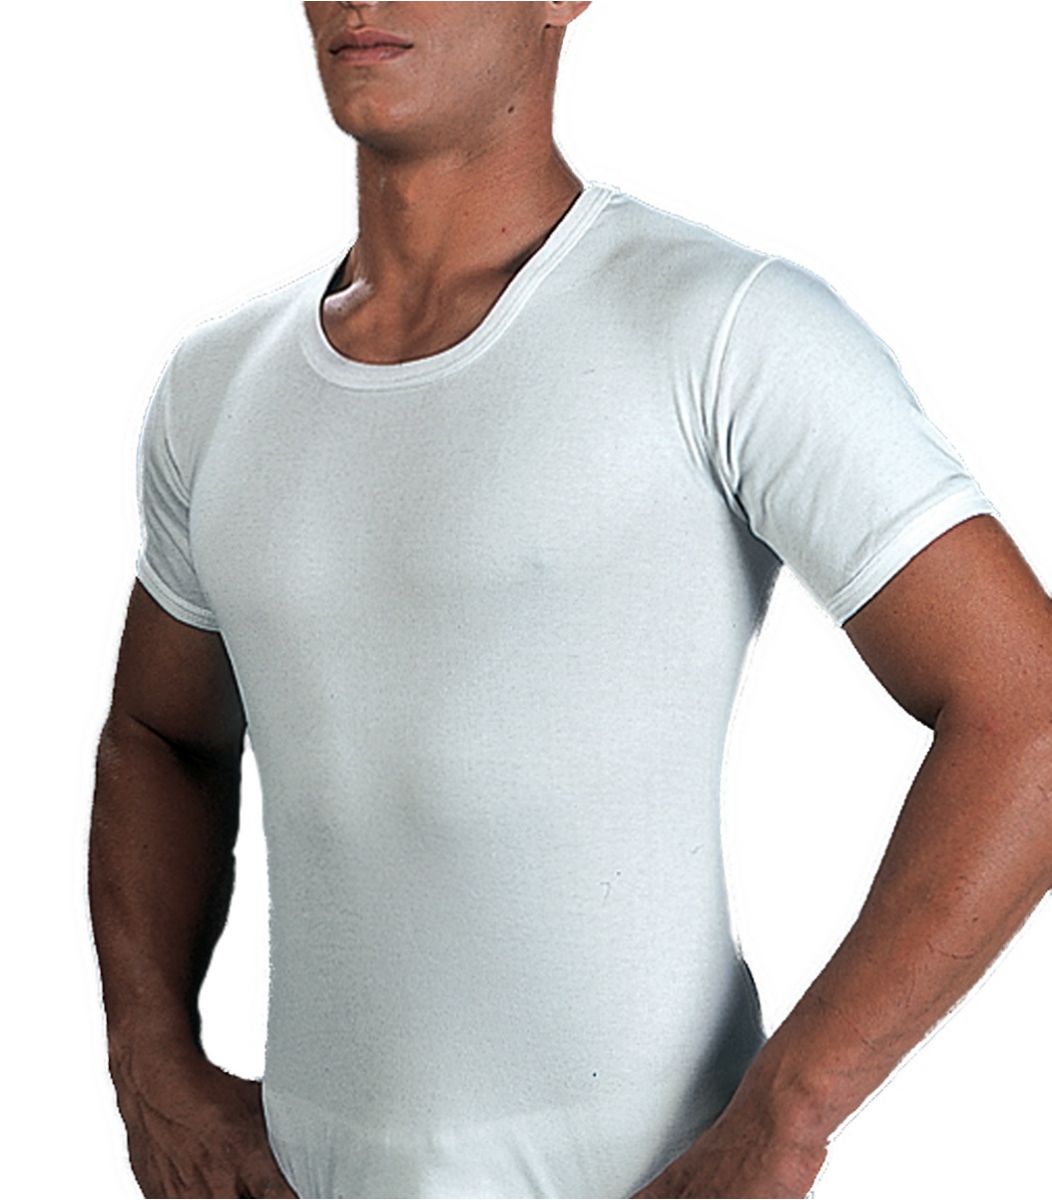 Open Neck T-Shirt, xlarge size, white